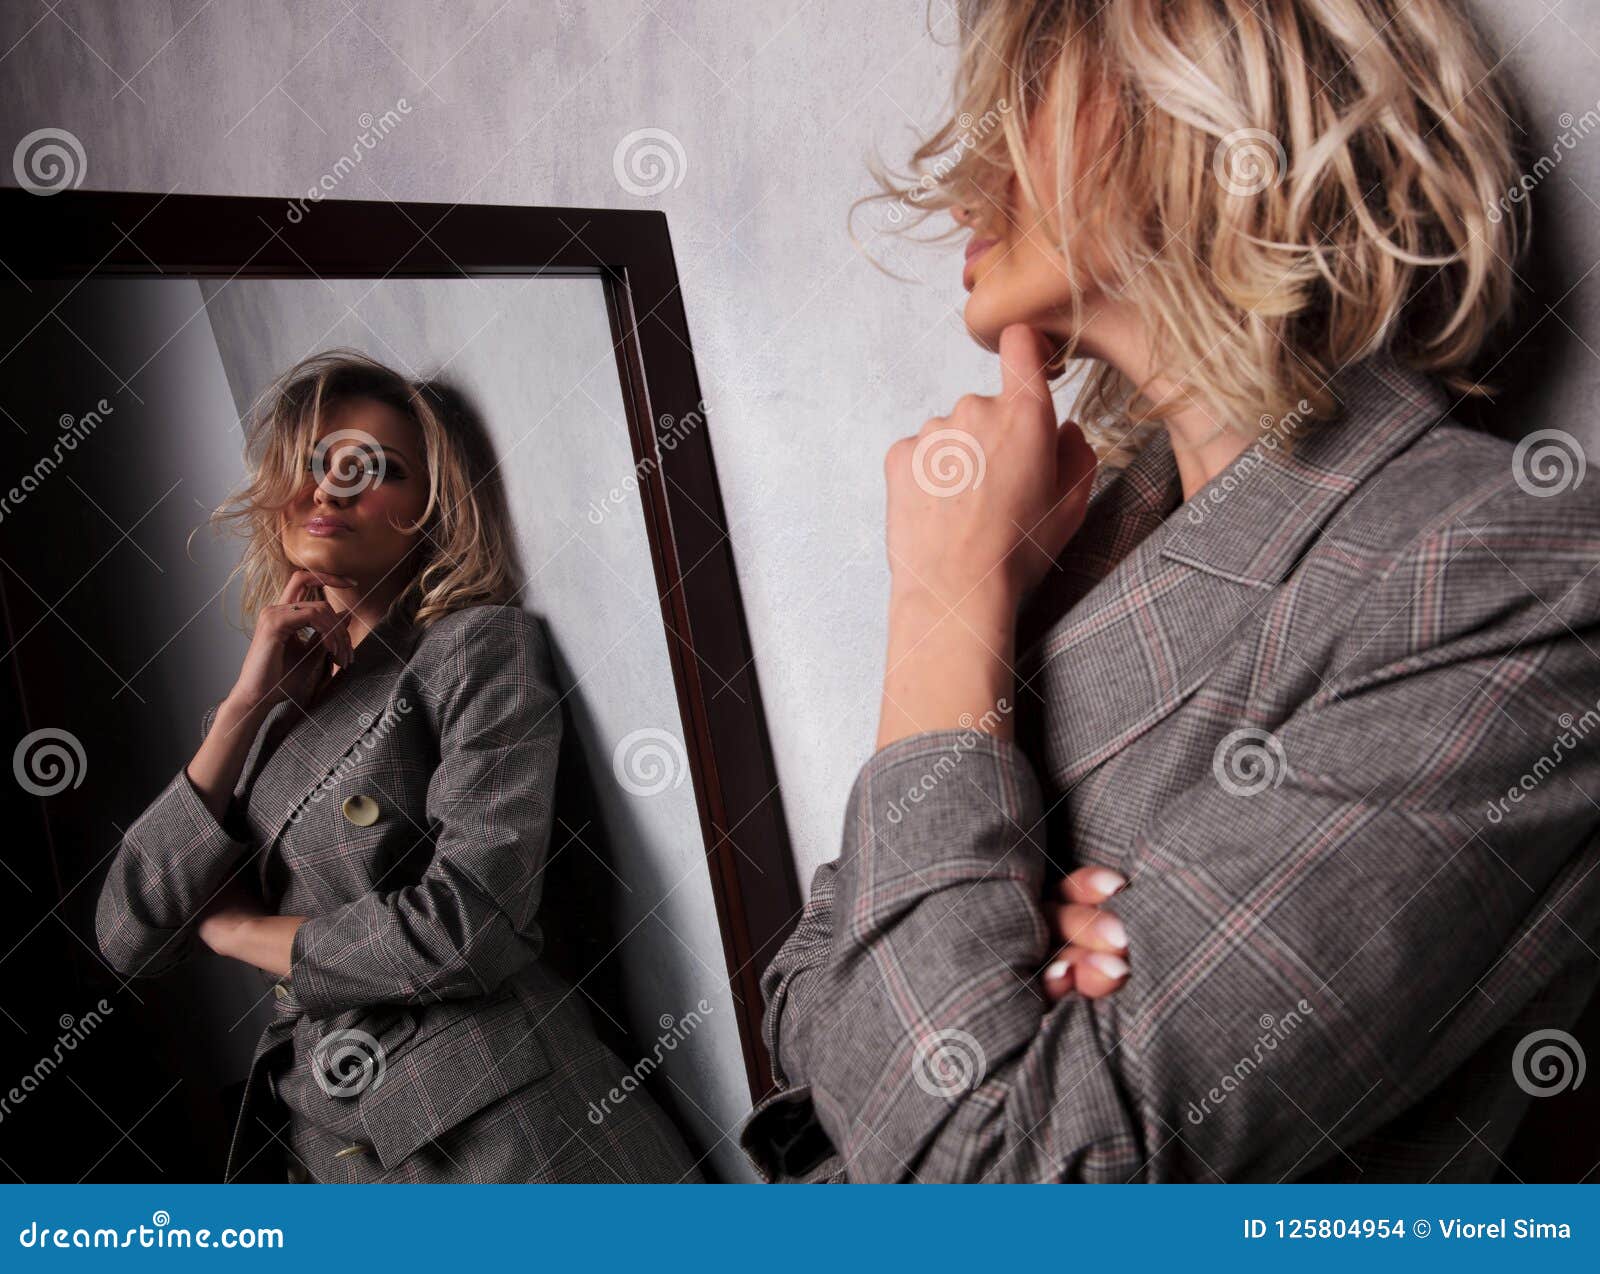 Грязные разговоры брюнеток. Отражение женщины в зеркале. Блондинка в сером. Блондинка в зеркальце. Женщина у зеркала сбоку.